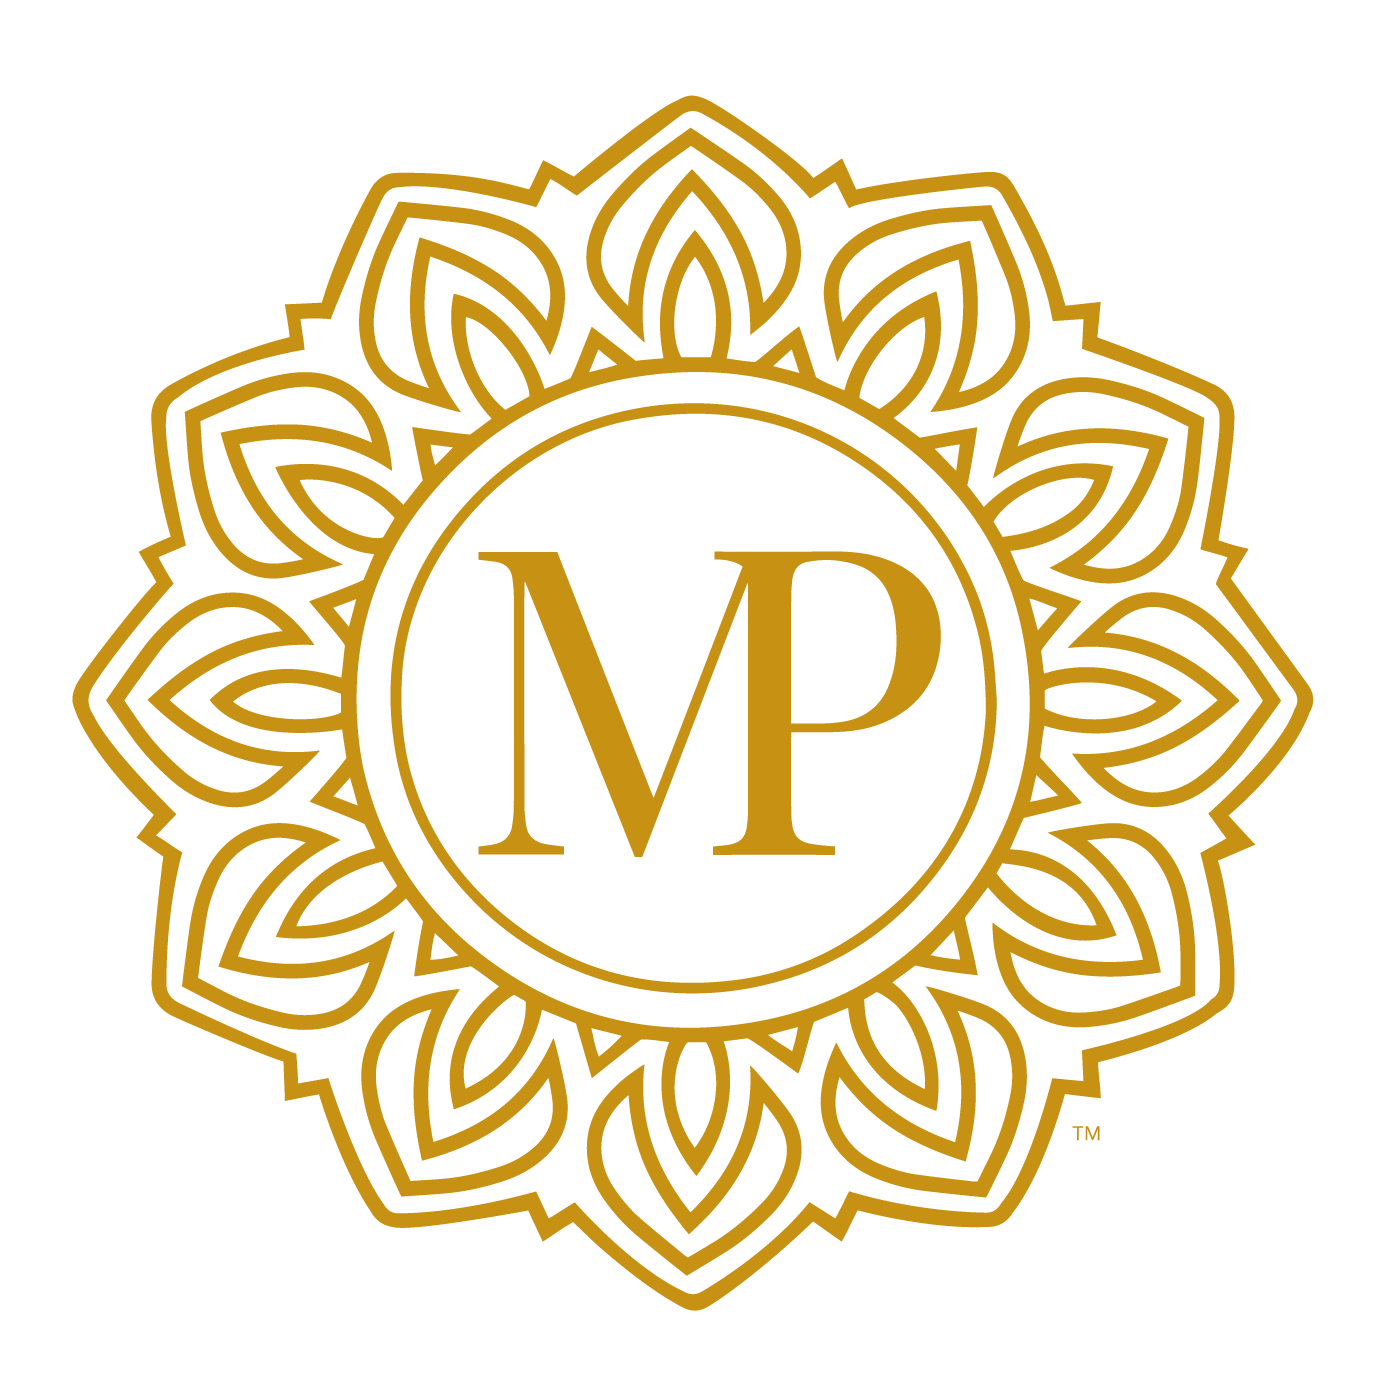 MasterPeace logo